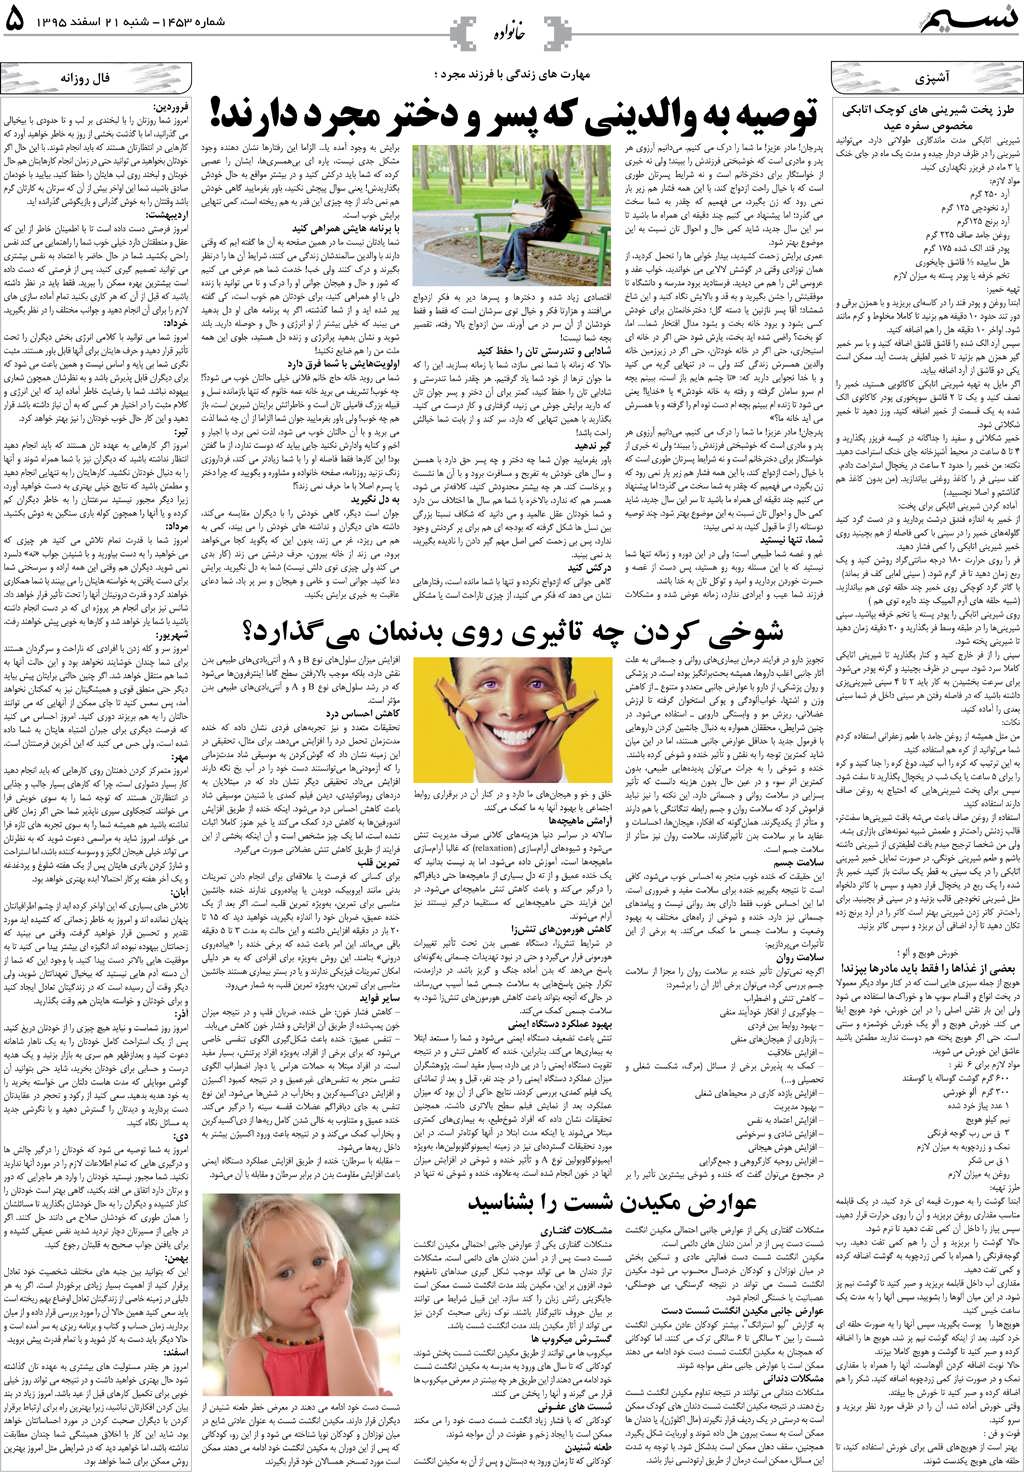 صفحه خانواده روزنامه نسیم شماره 1453